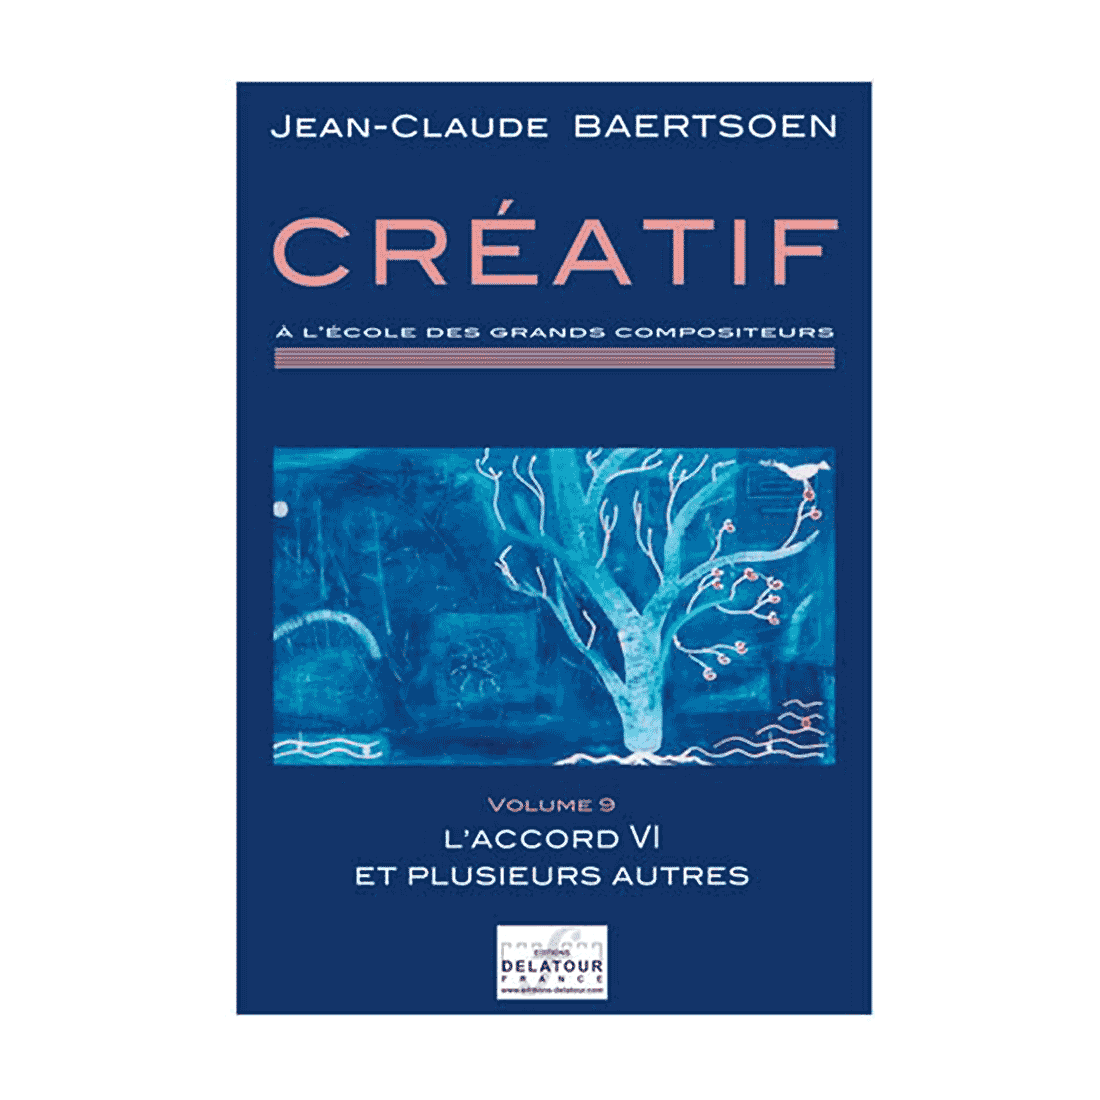 CREATIF A l'école des grands compositeurs - Vol. 9